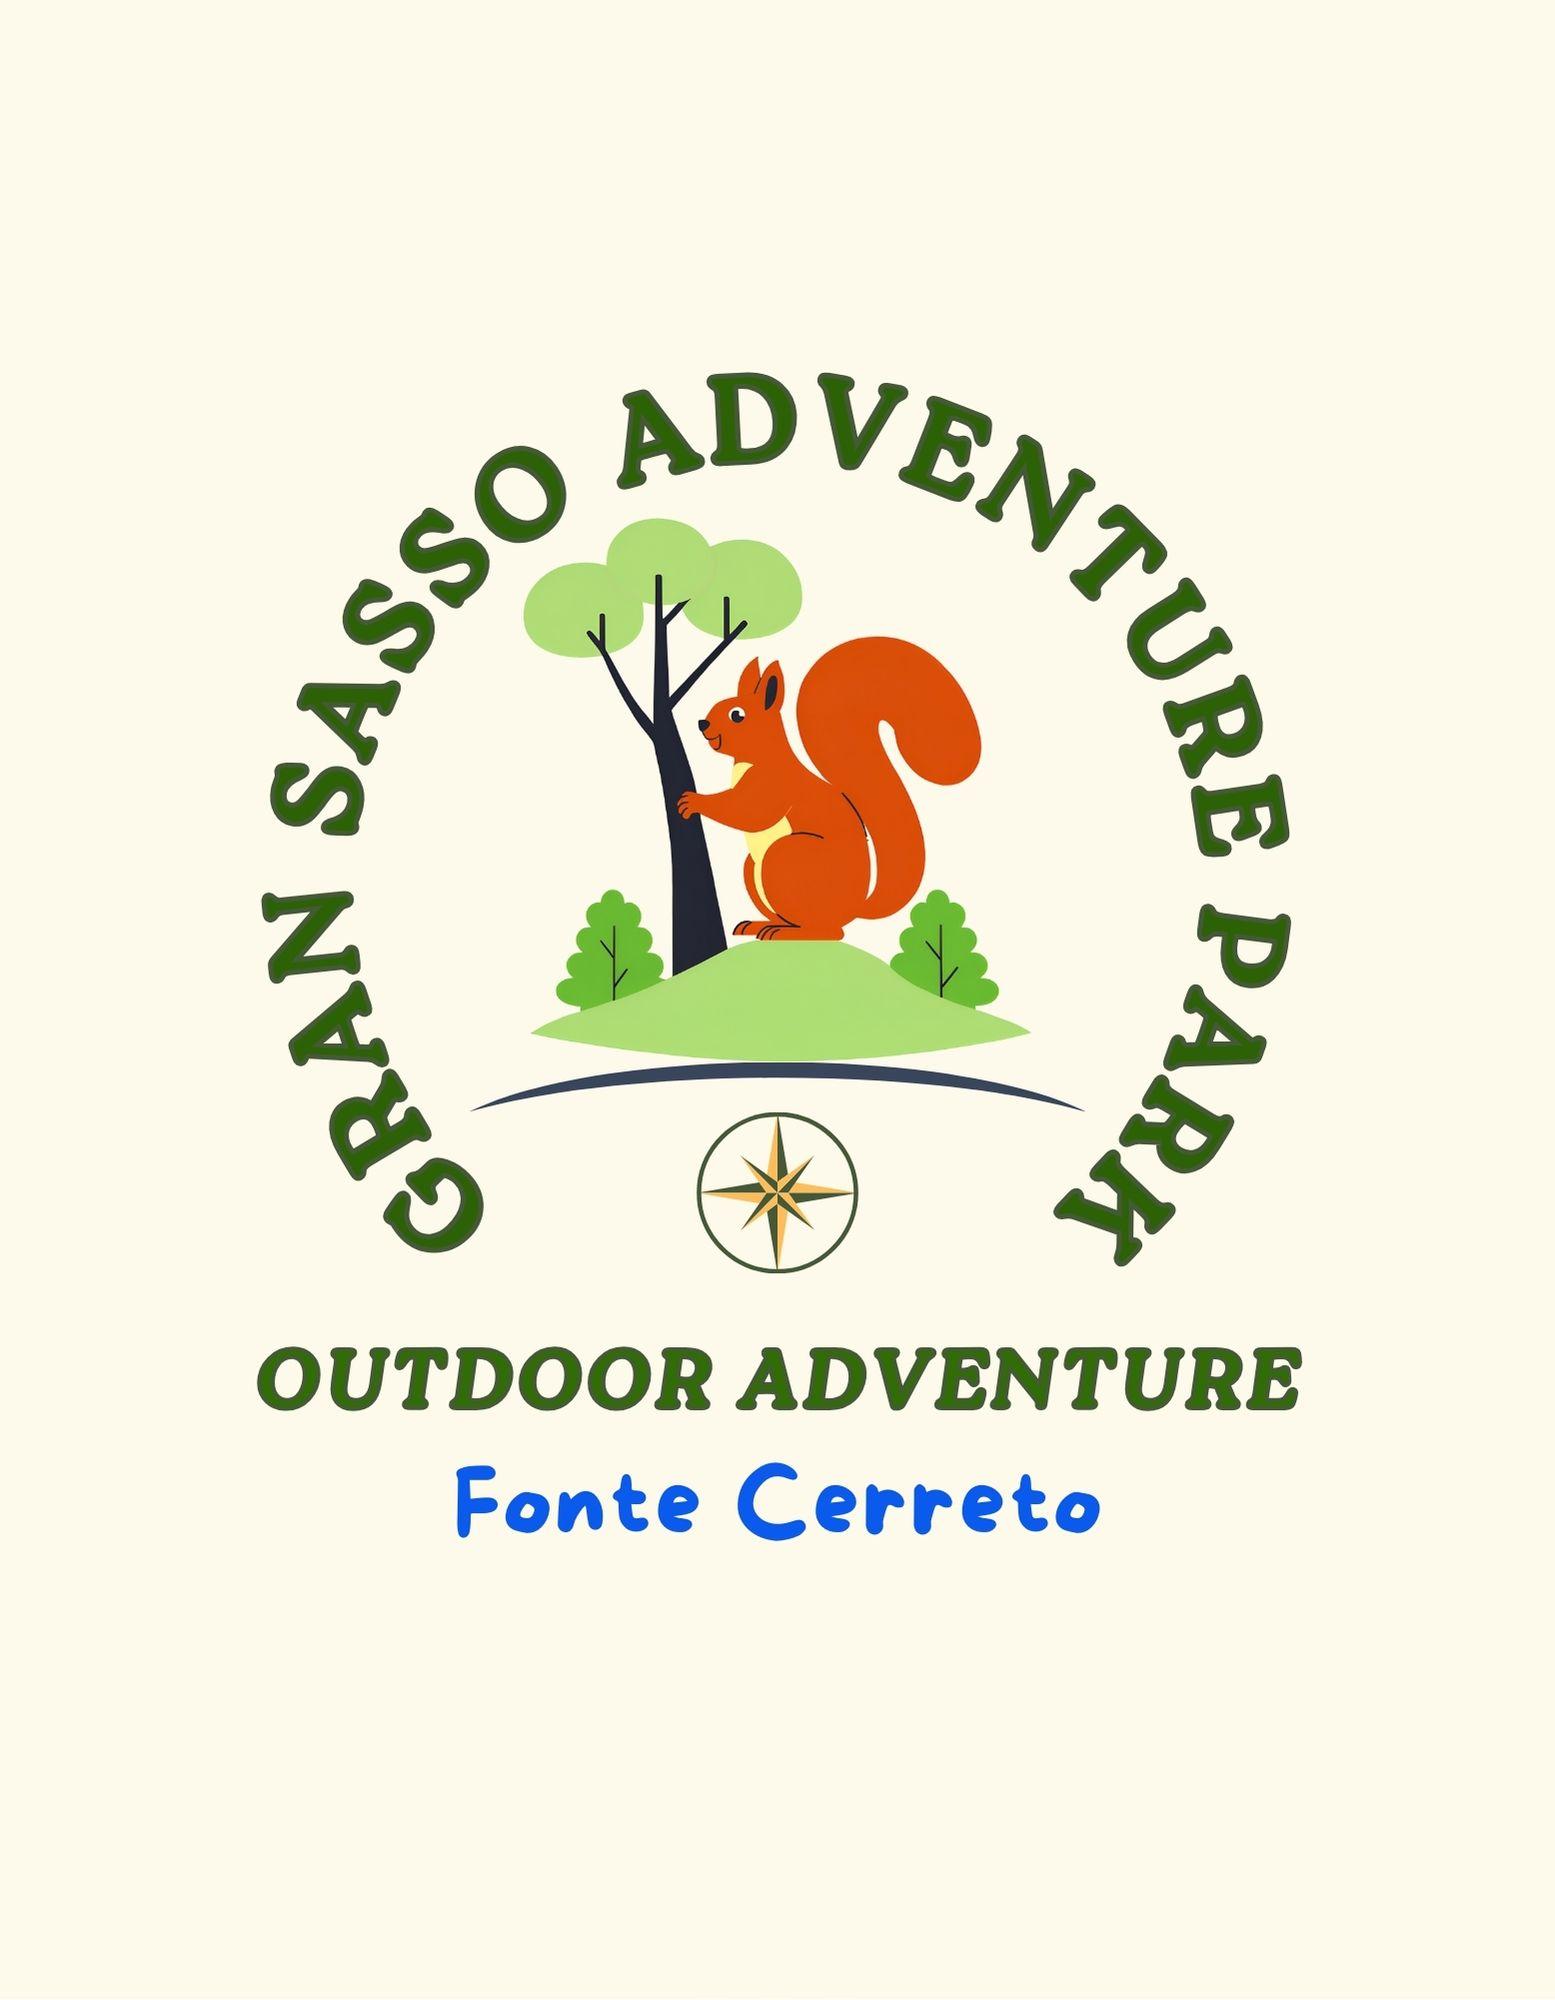 Gran Sasso Adventure Park